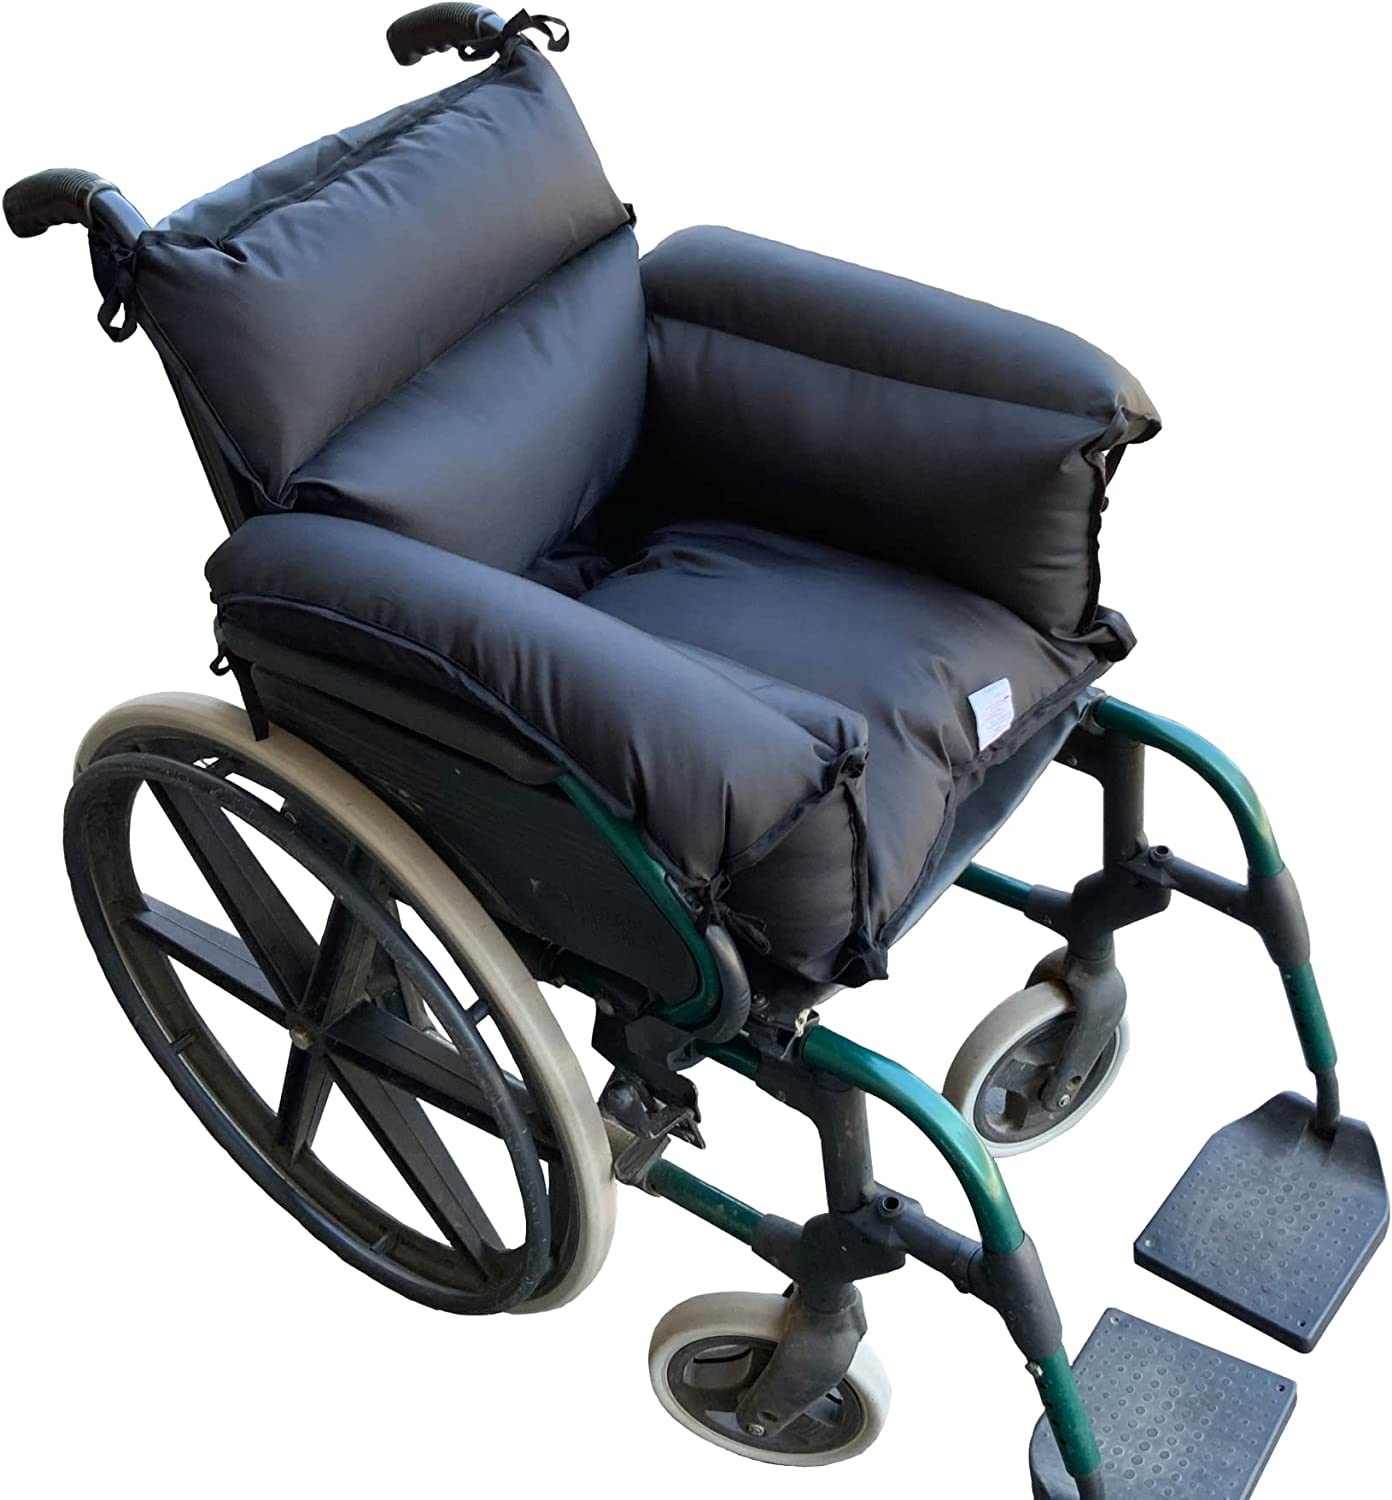 Billede af XL hynde til kørestolsbrugere - Vandtæt, blød og allergivenlig. 45 x 45 cm. INKONTINES.